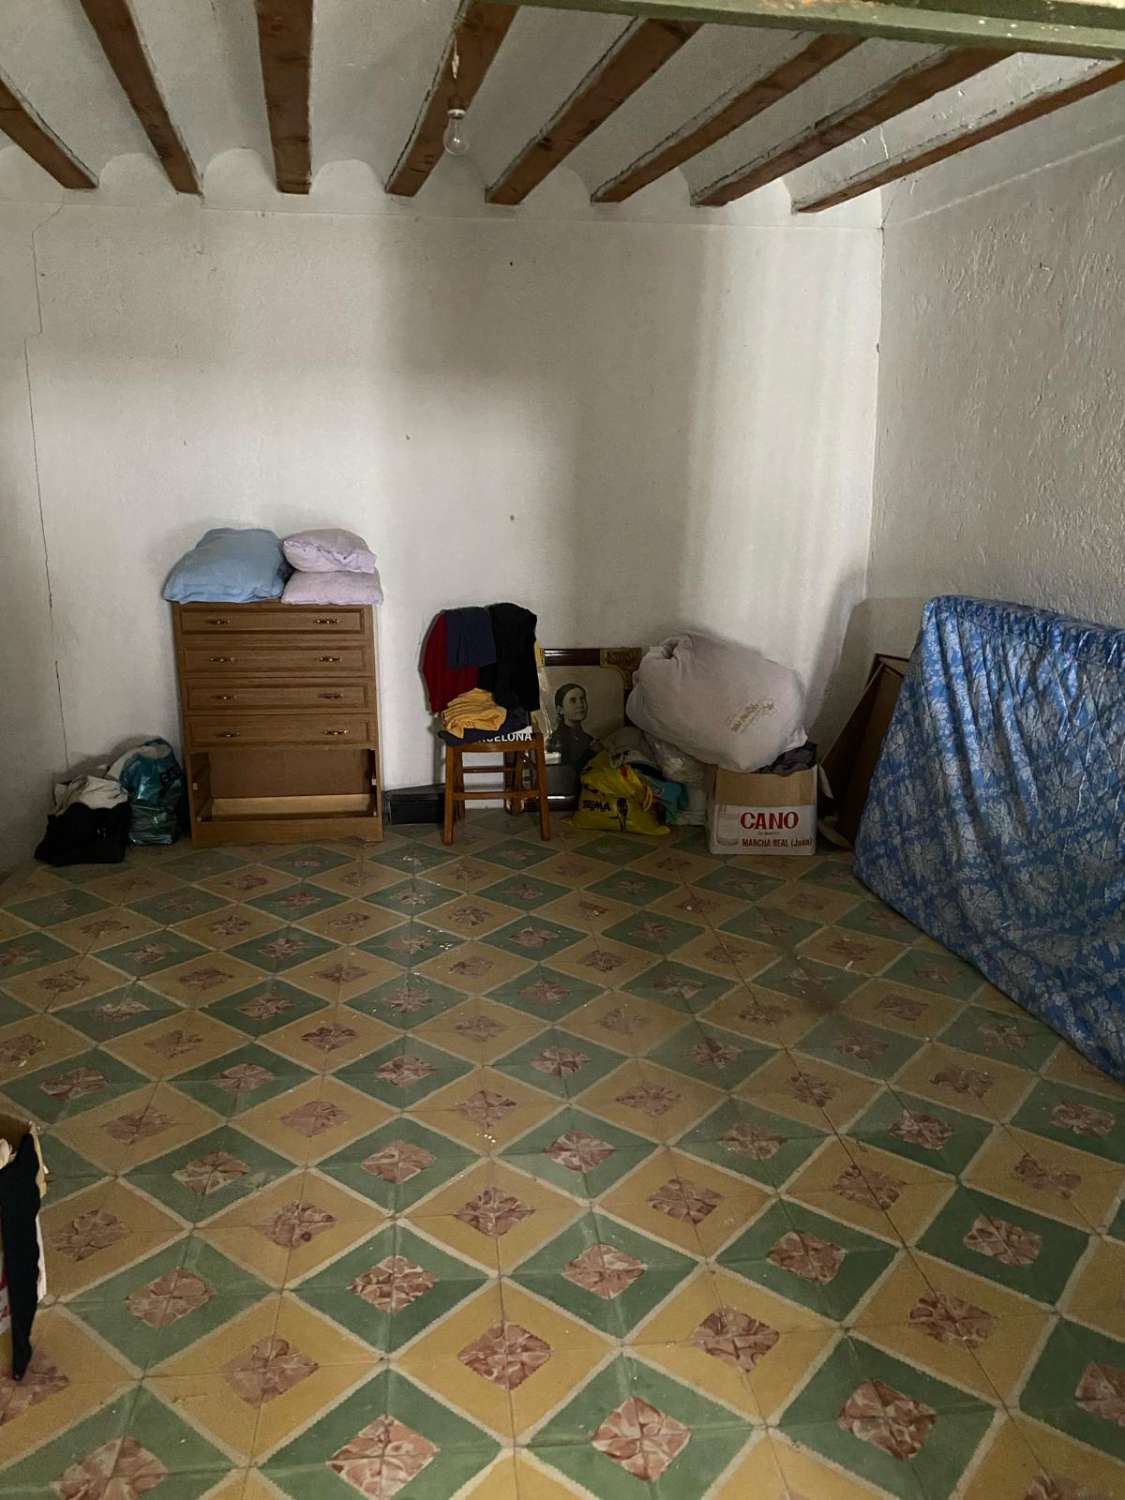 Koopje 4 slaapkamers, 2 badkamers, 3 verdiepingen tellend herenhuis voor hervorming in Velez-Blanco